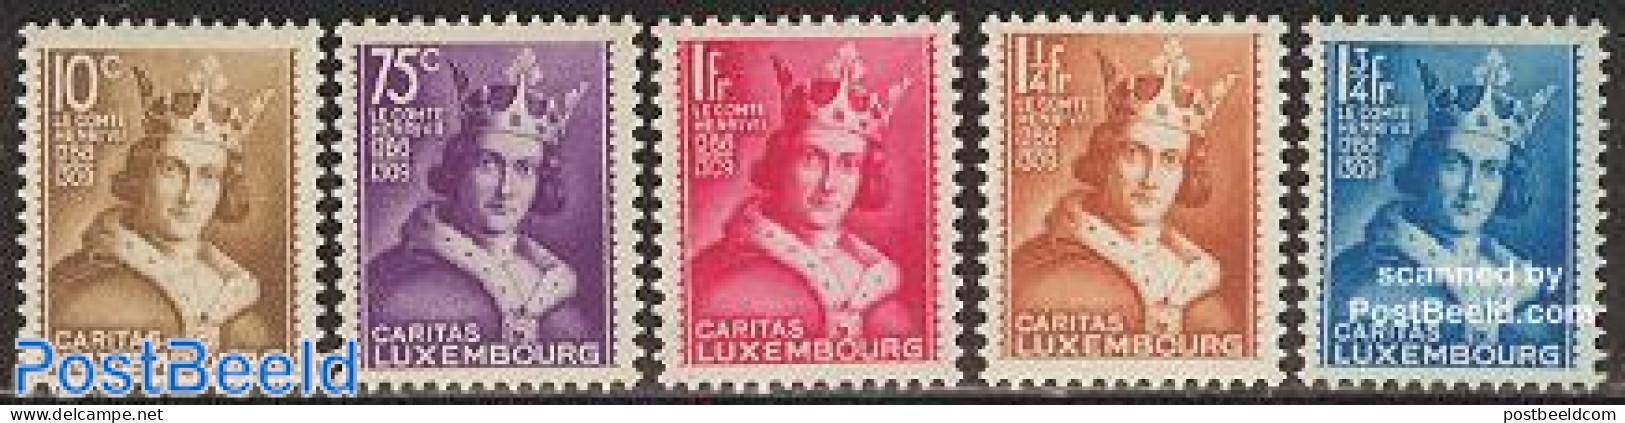 Luxemburg 1933 Child Welfare 5v, Unused (hinged), History - Kings & Queens (Royalty) - Ongebruikt